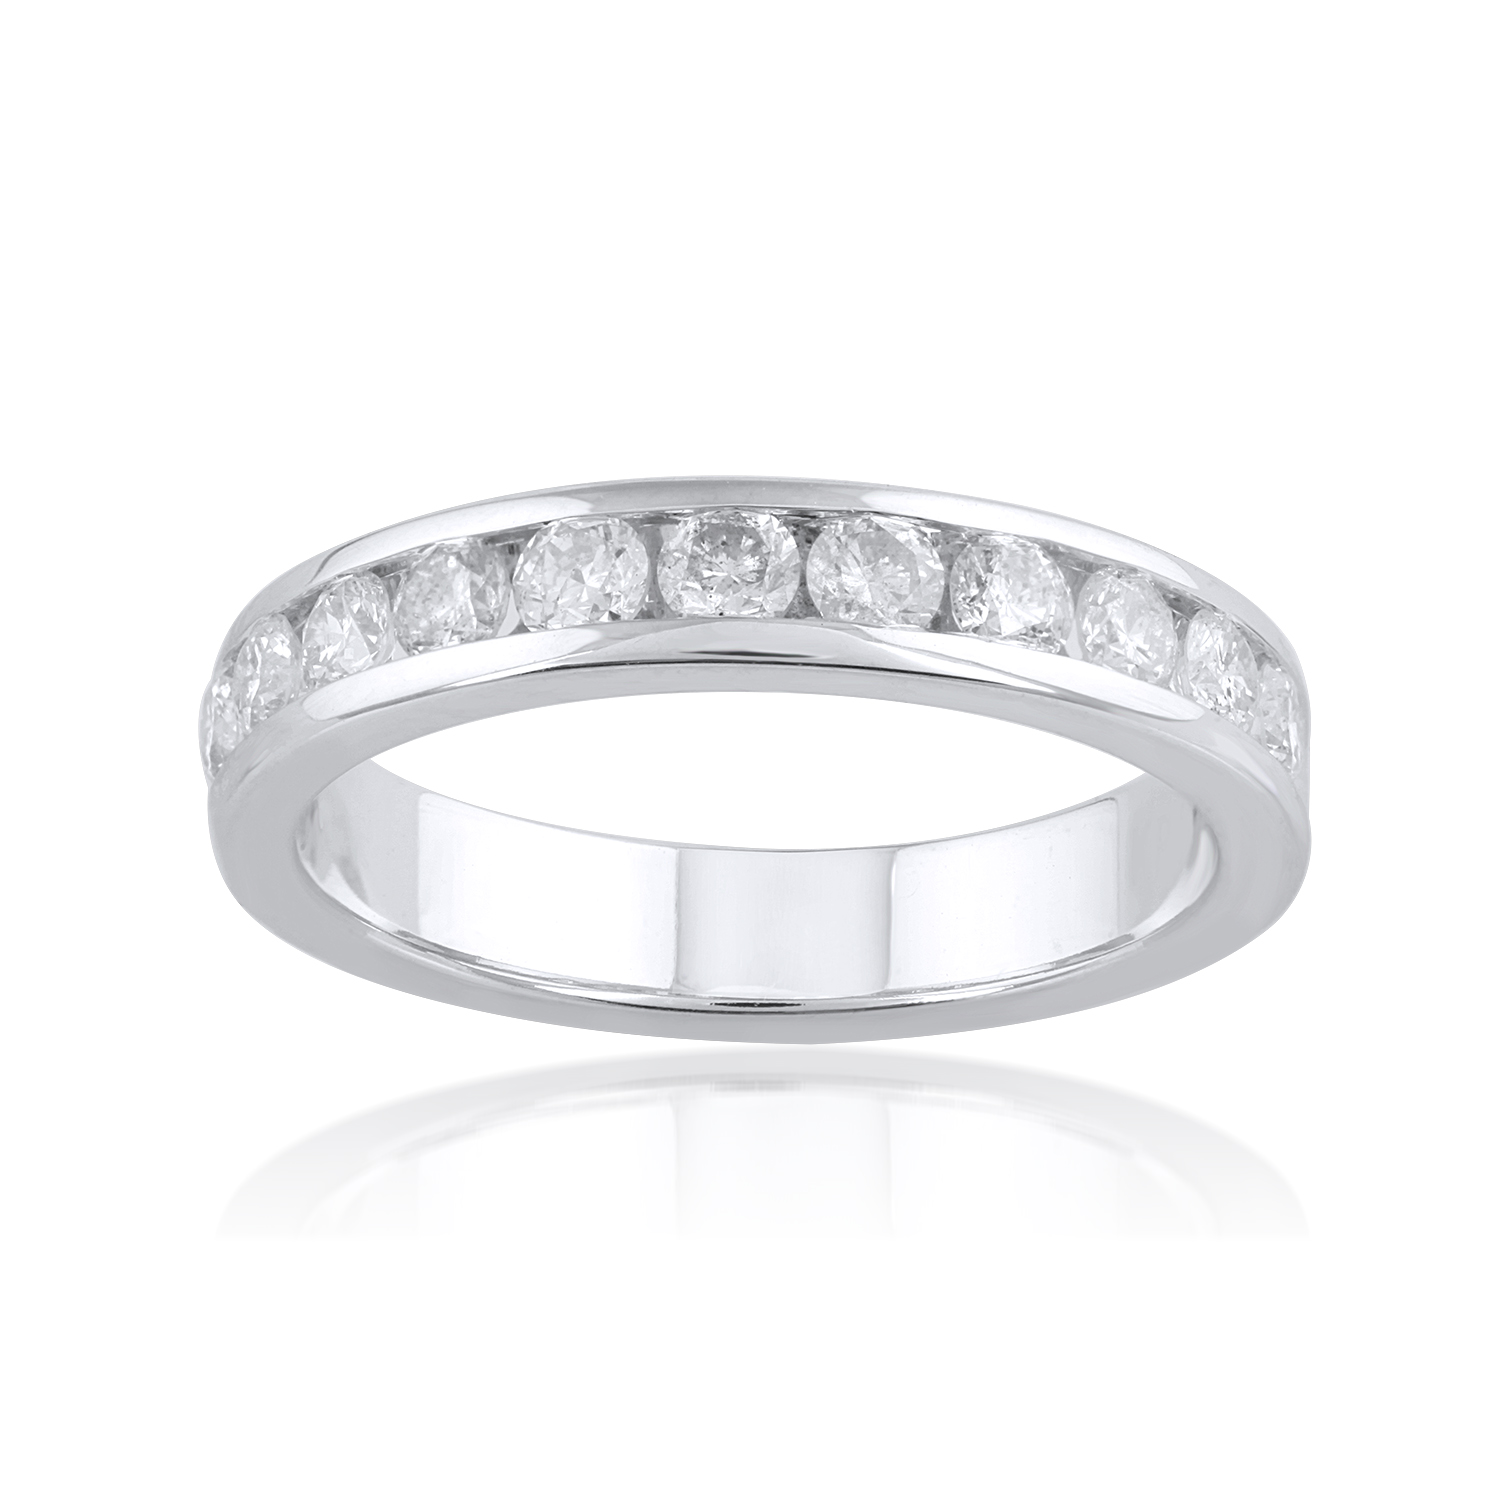 0.75 Carat Diamond Wedding Band Ring in 14k White Gold